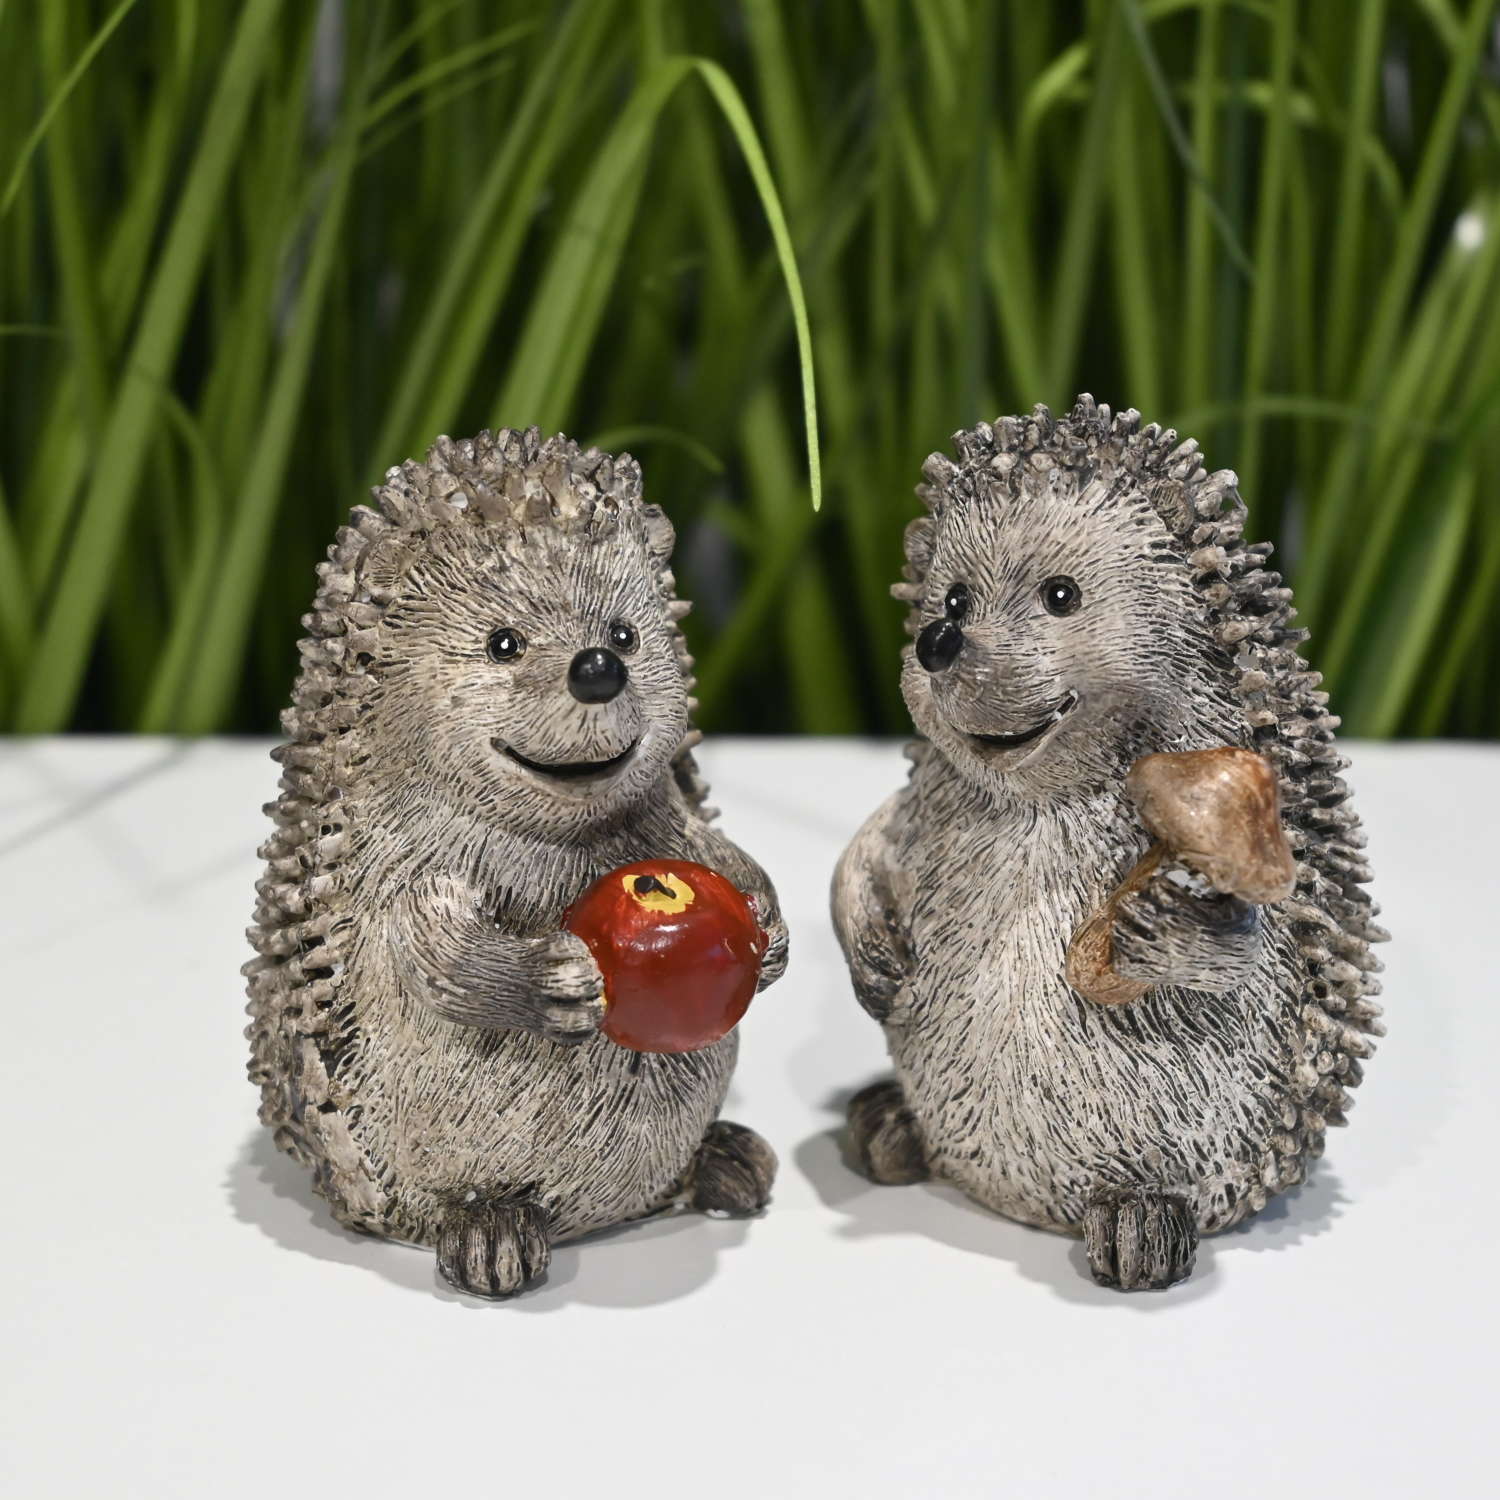 Hedgehog ornaments